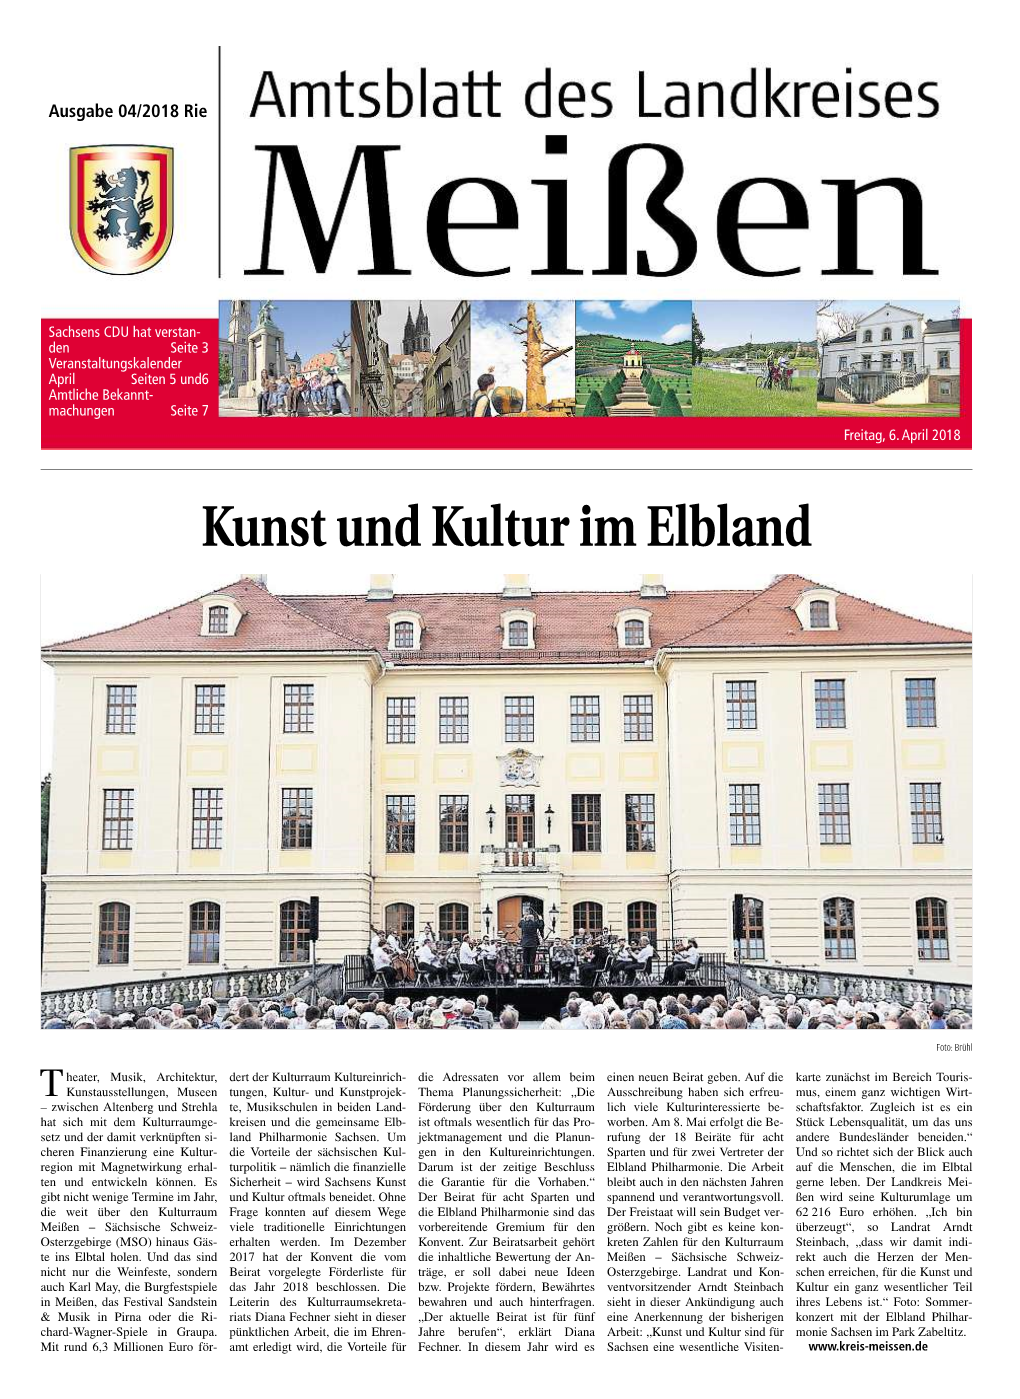 Amtsblatt Des Landkreises Meißen 04/2018 Vom